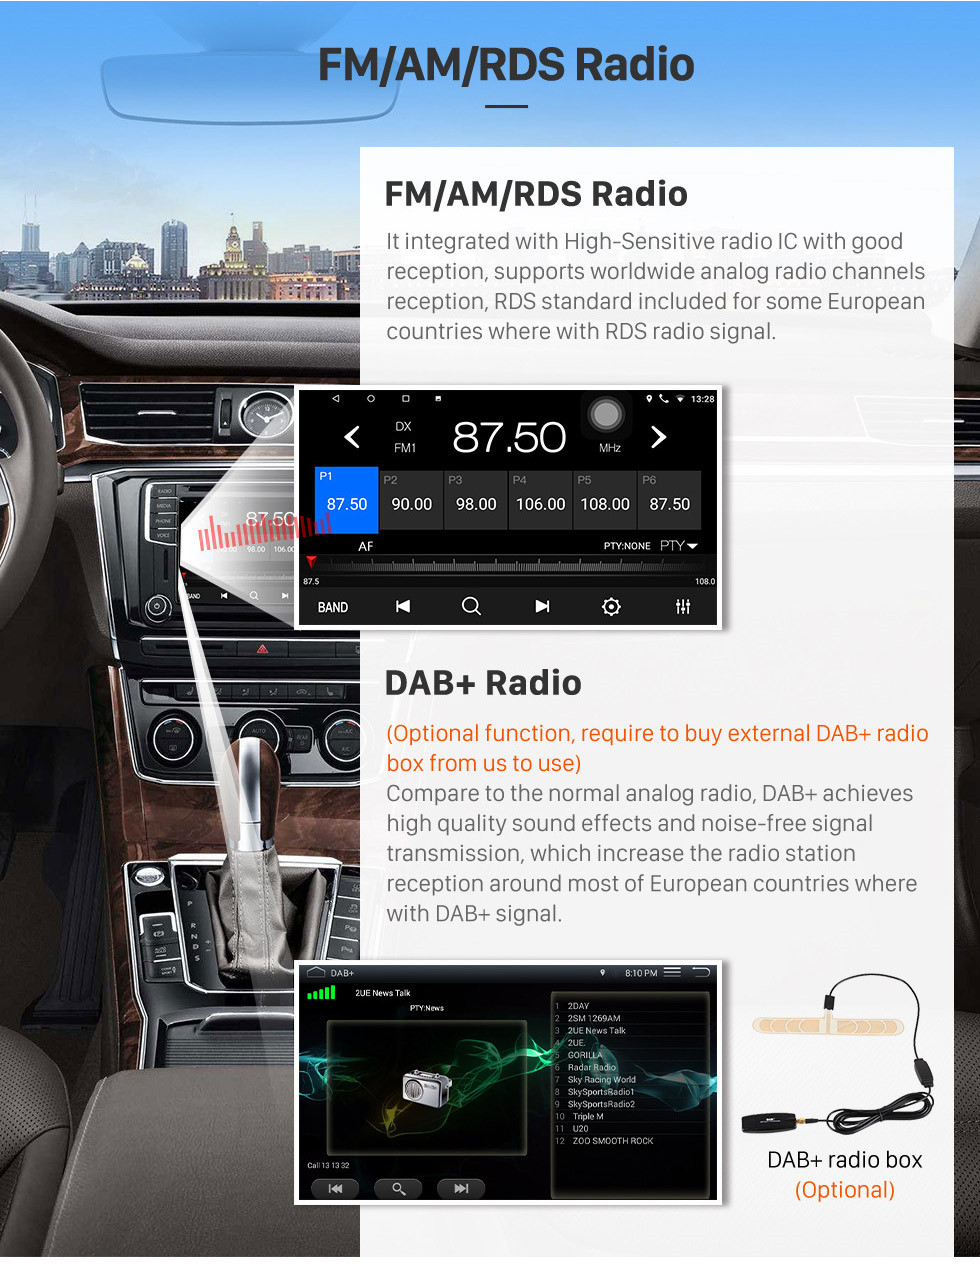 Seicane OEM 9 pulgadas Android 10.0 Radio para 2016-2019 Kia Niro Bluetooth Wifi Pantalla táctil GPS soporte para navegación Carplay DVR OBD cámara de visión trasera